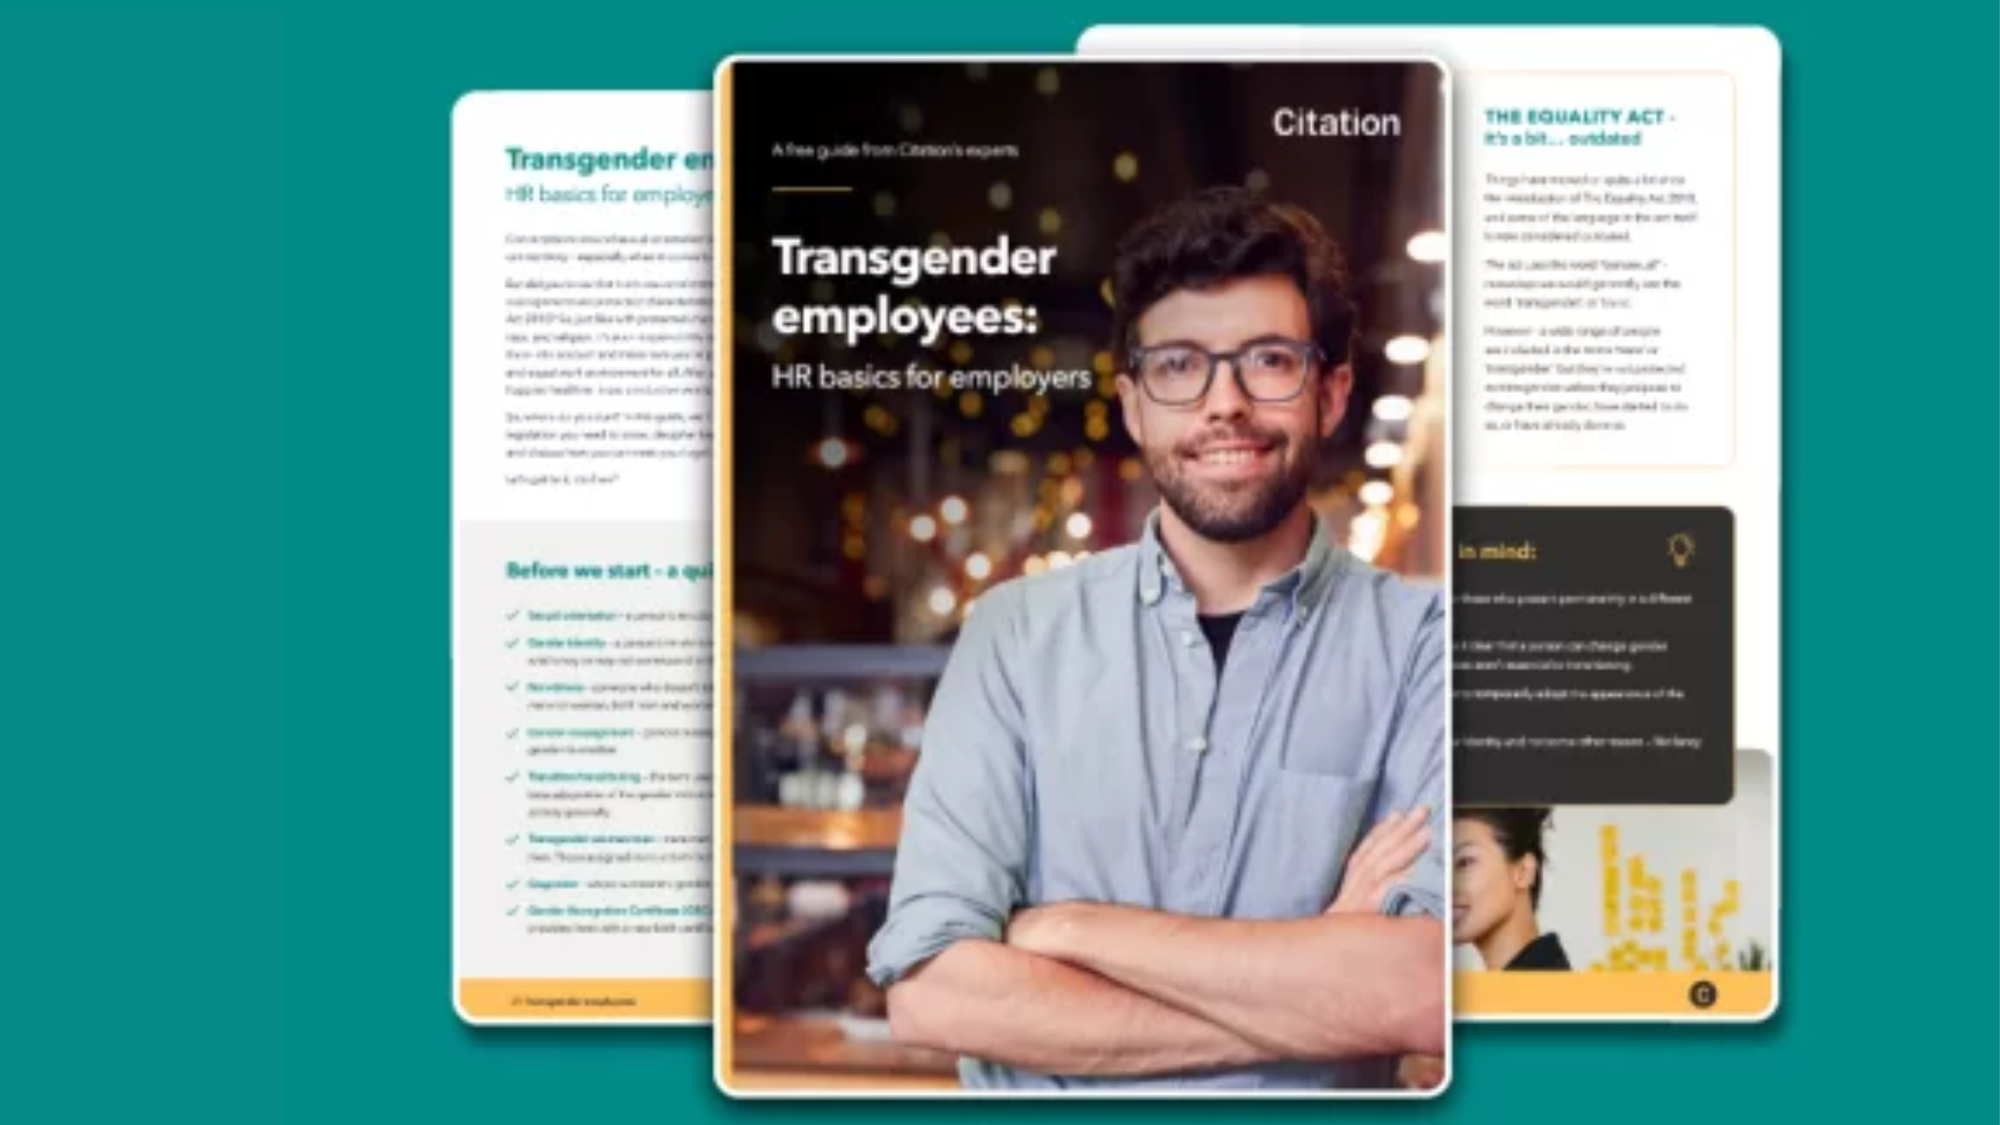 Transgender employees: HR basics for employers